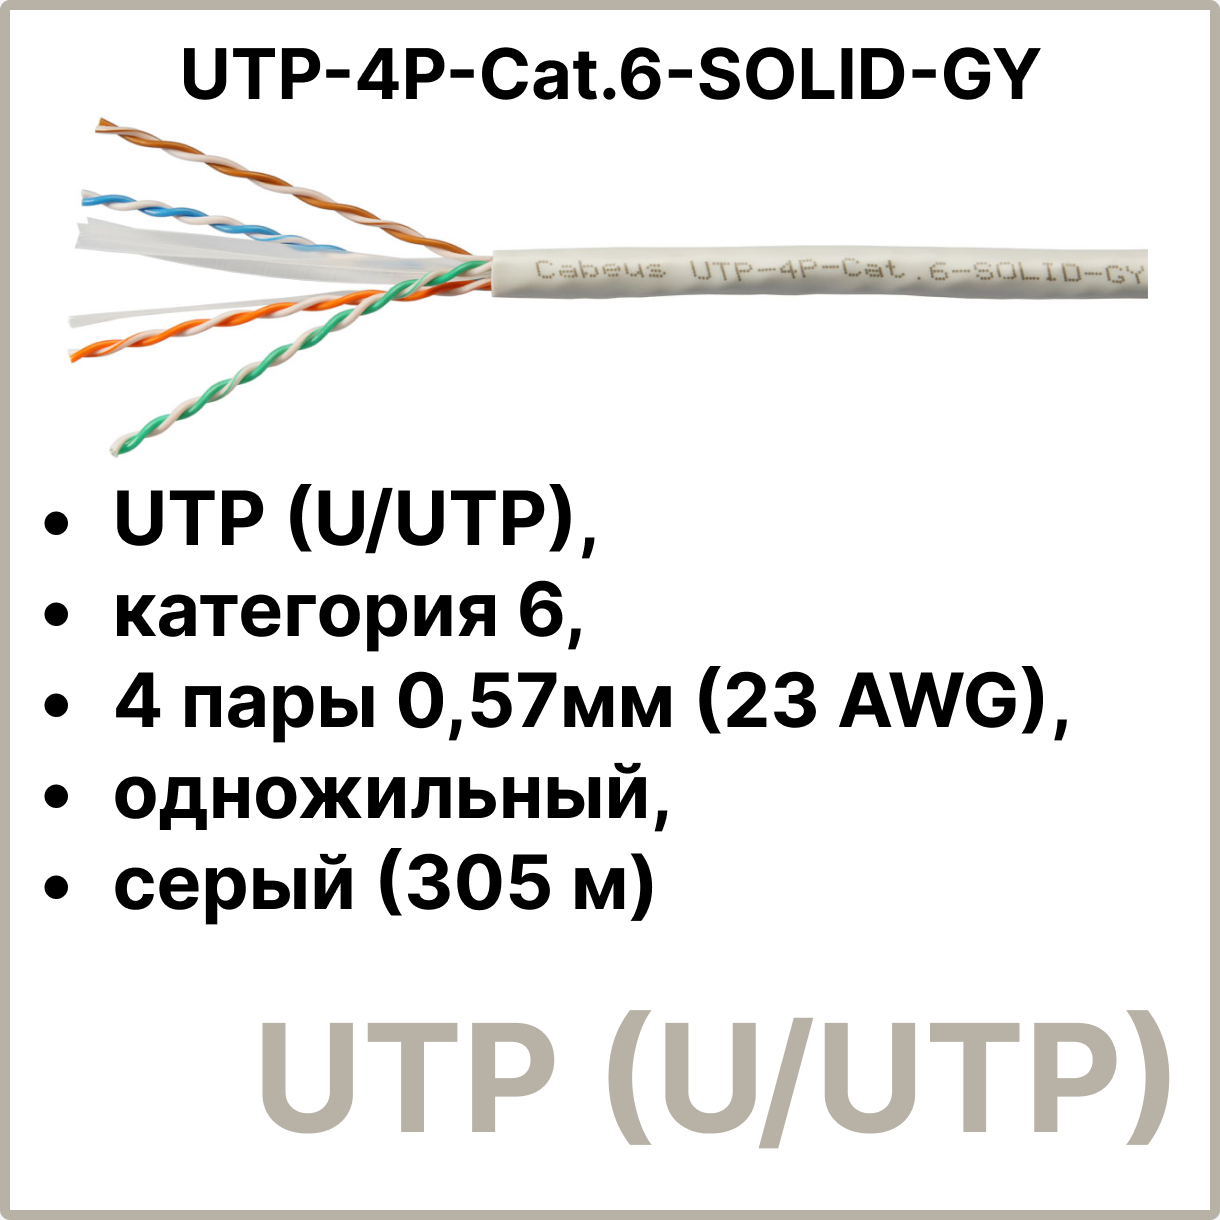 Cabeus UTP-4P-Cat.6-SOLID-GY Кабель витая пара UTP (U/UTP), категория 6, 4 пары 0,57мм (23 AWG), одножильный, серый (305 м)